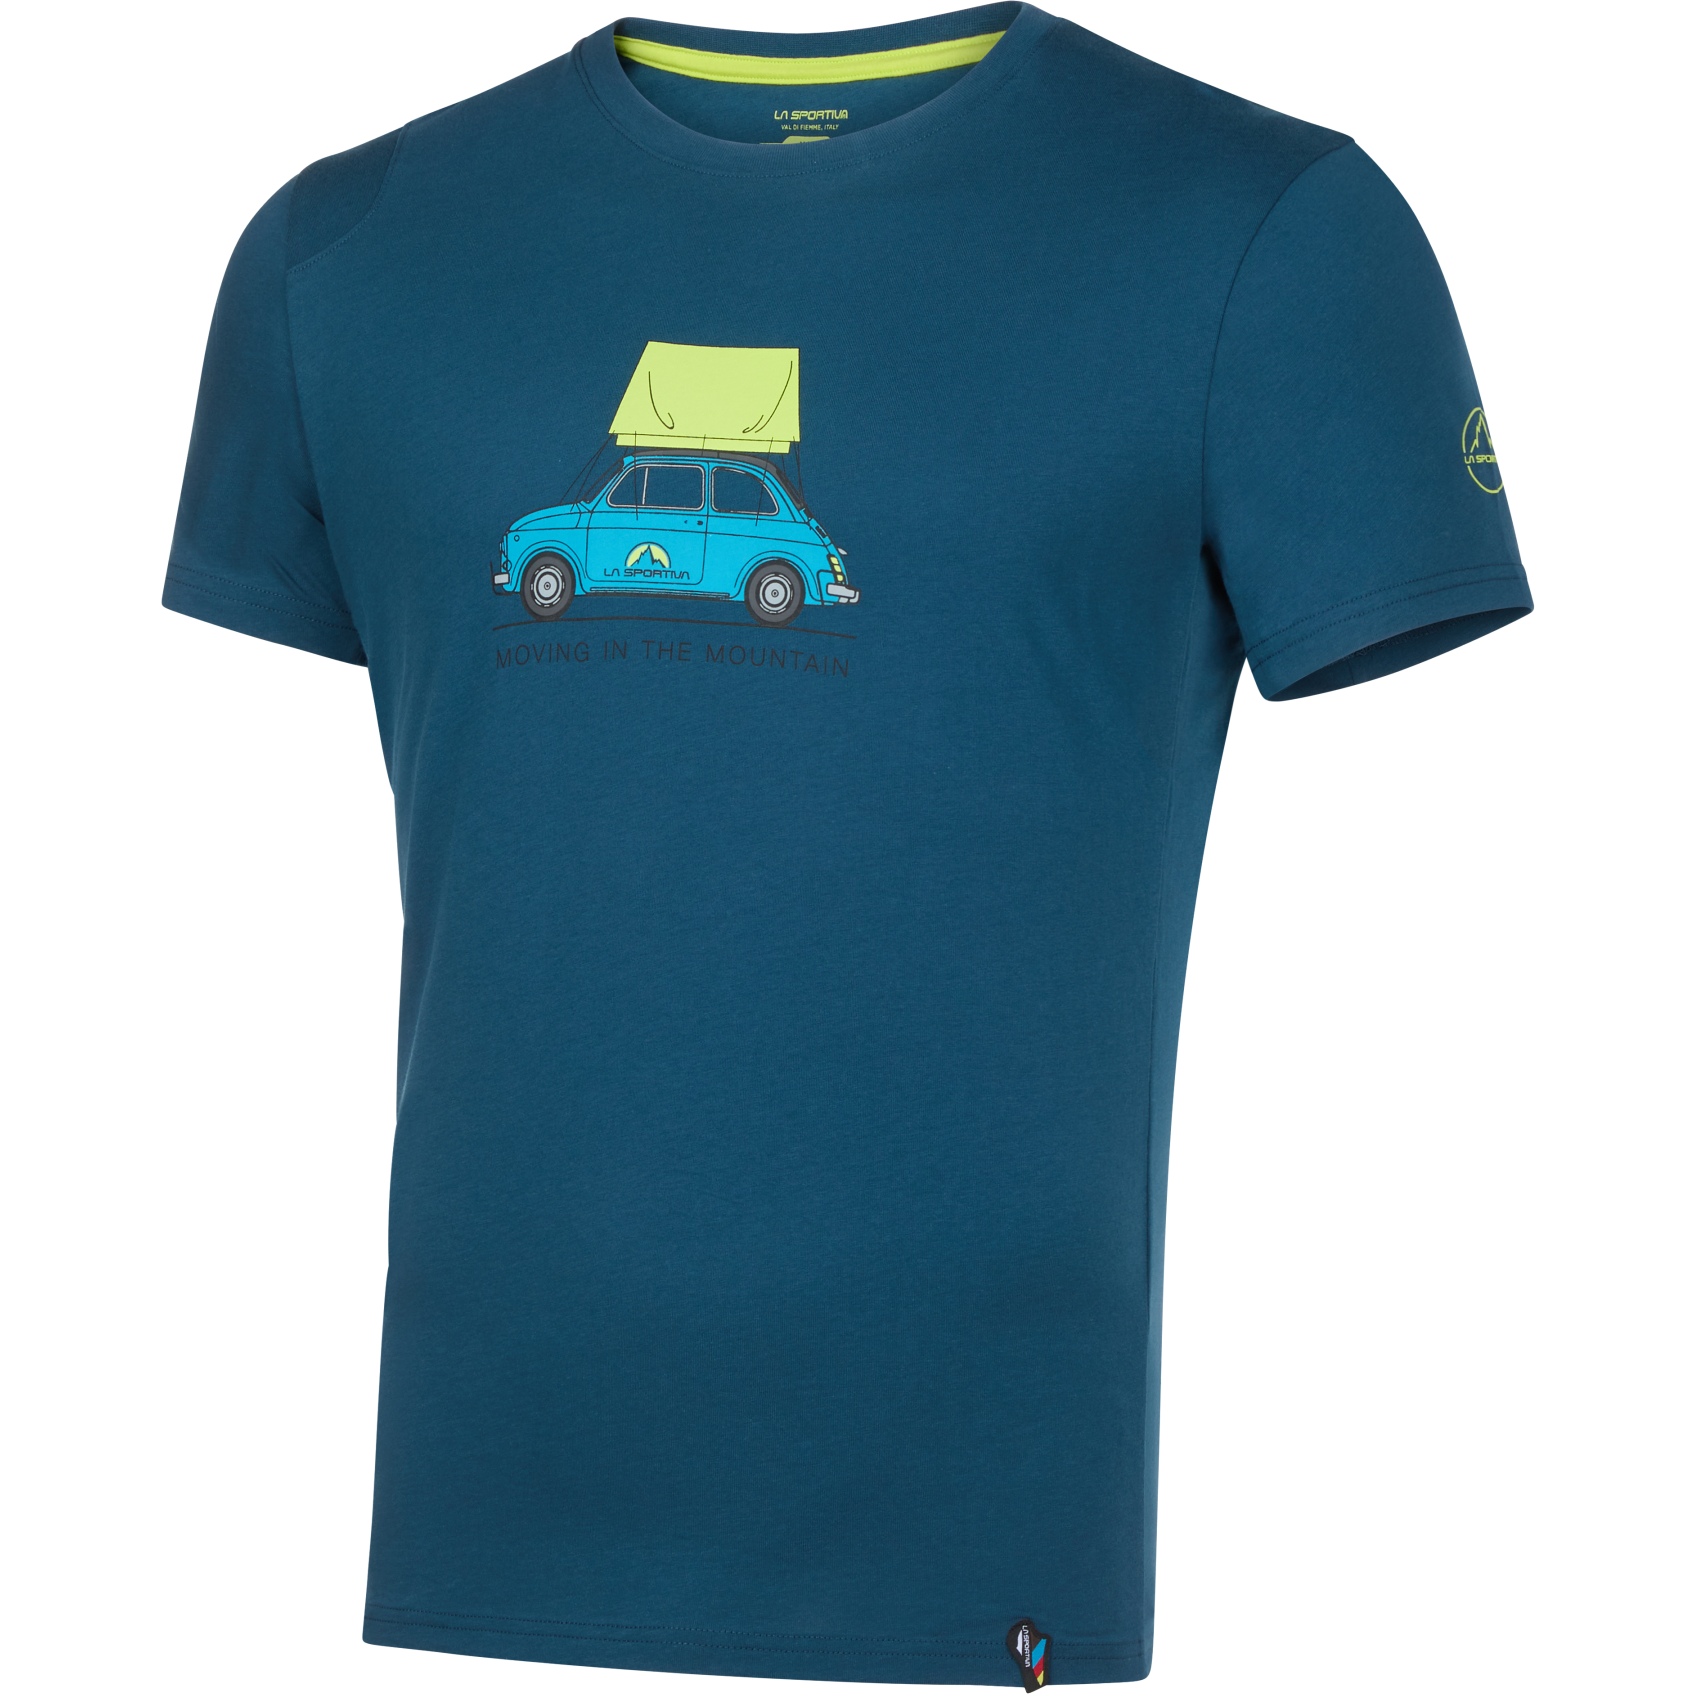 Produktbild von La Sportiva Cinquecento T-Shirt Herren - Storm Blue/Lime Punch